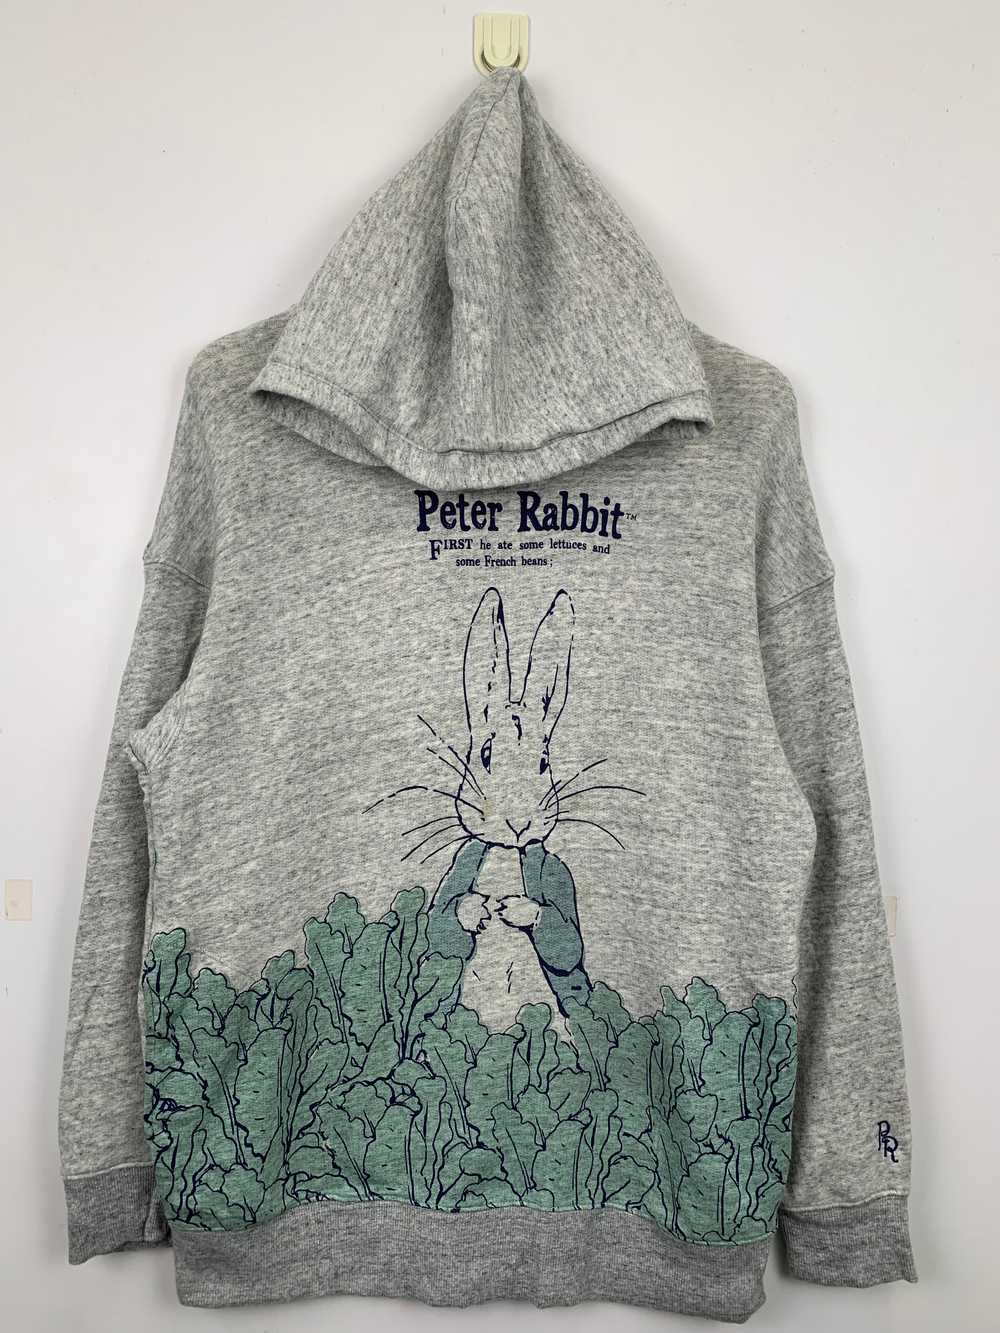 Uniqlo - Japanese Brand Uniqlo Peter Rabbit Pullo… - image 1